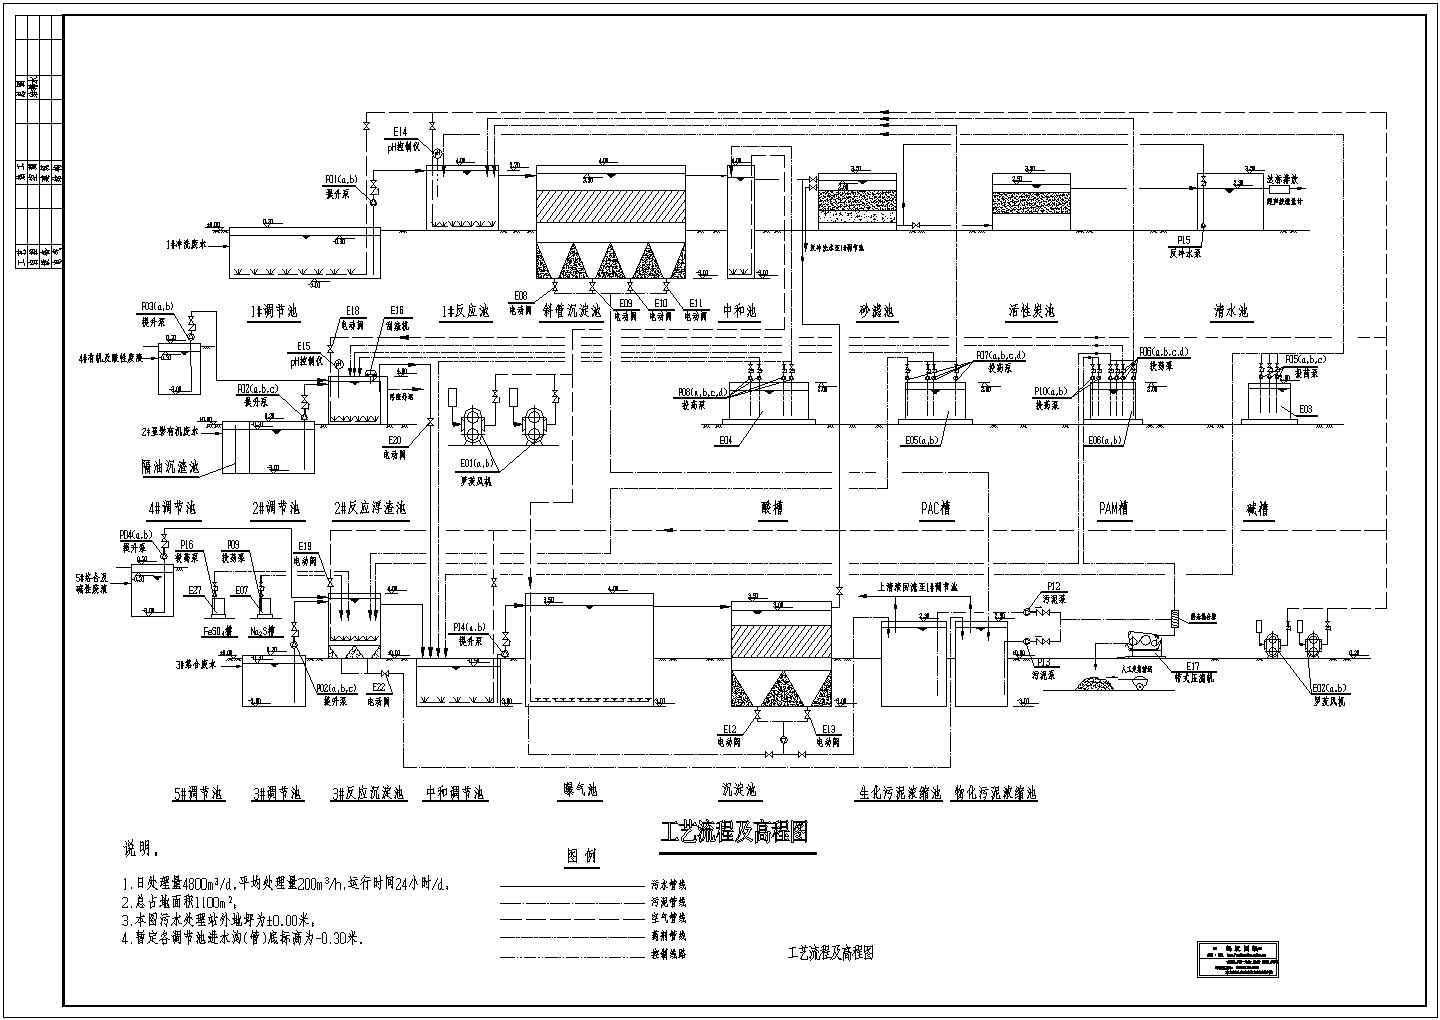 某某印刷电路板厂污水水解酸化处理流程图